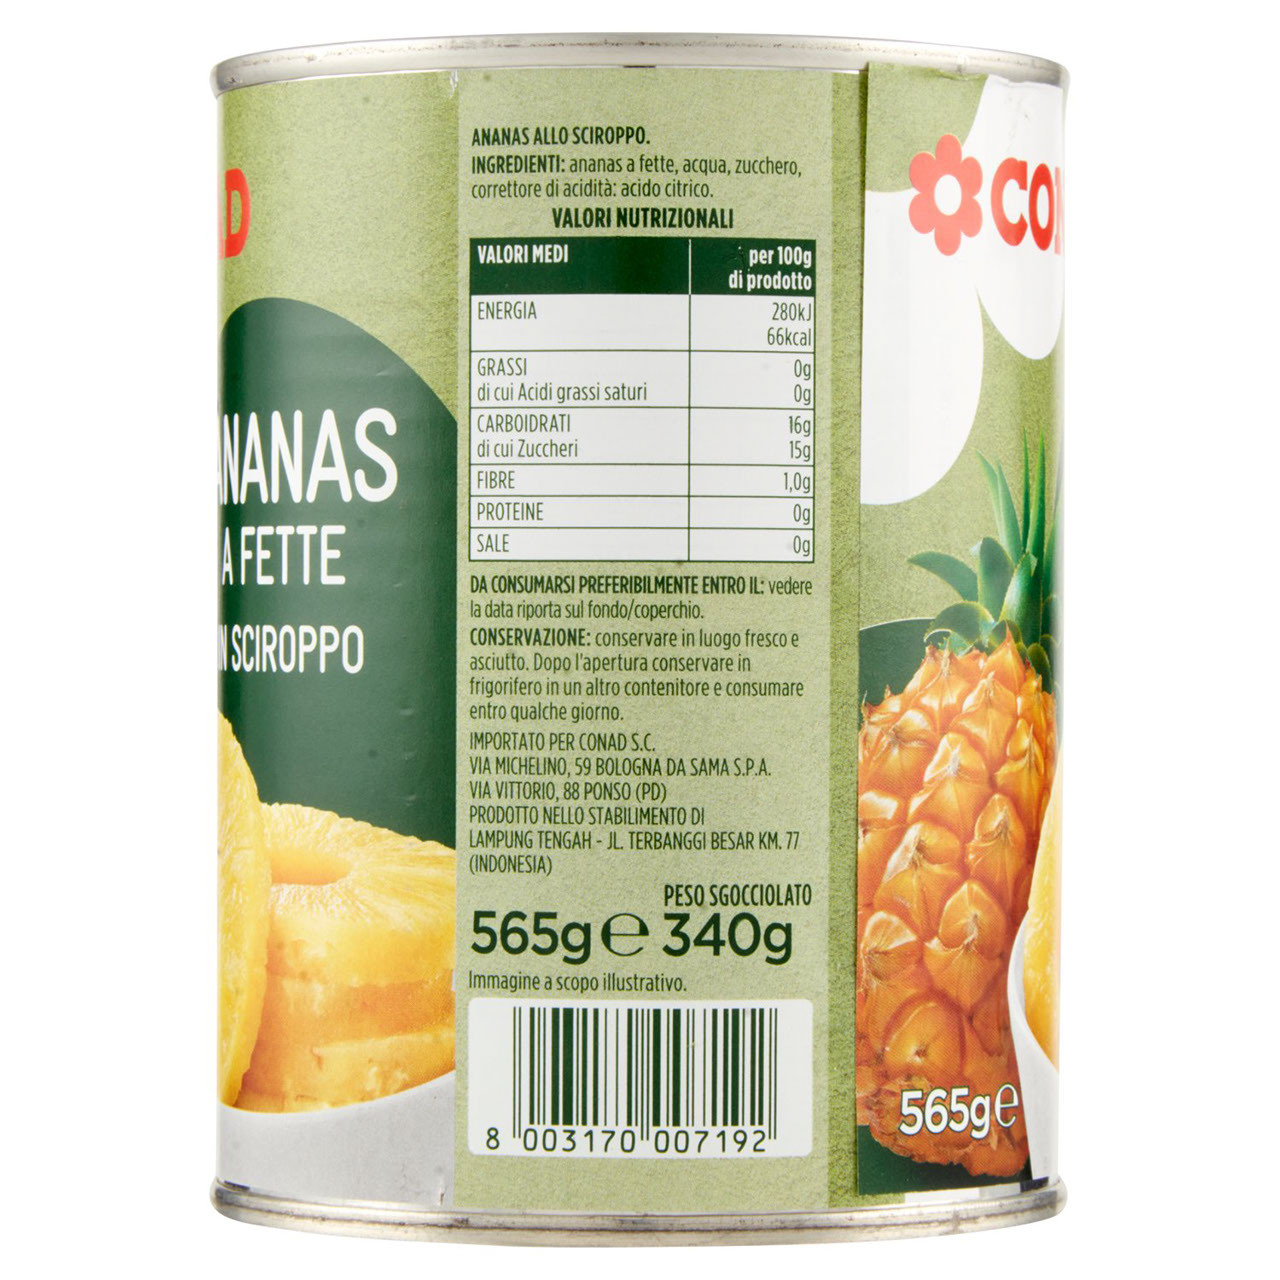 Ananas a Fette in Sciroppo 565 g Conad